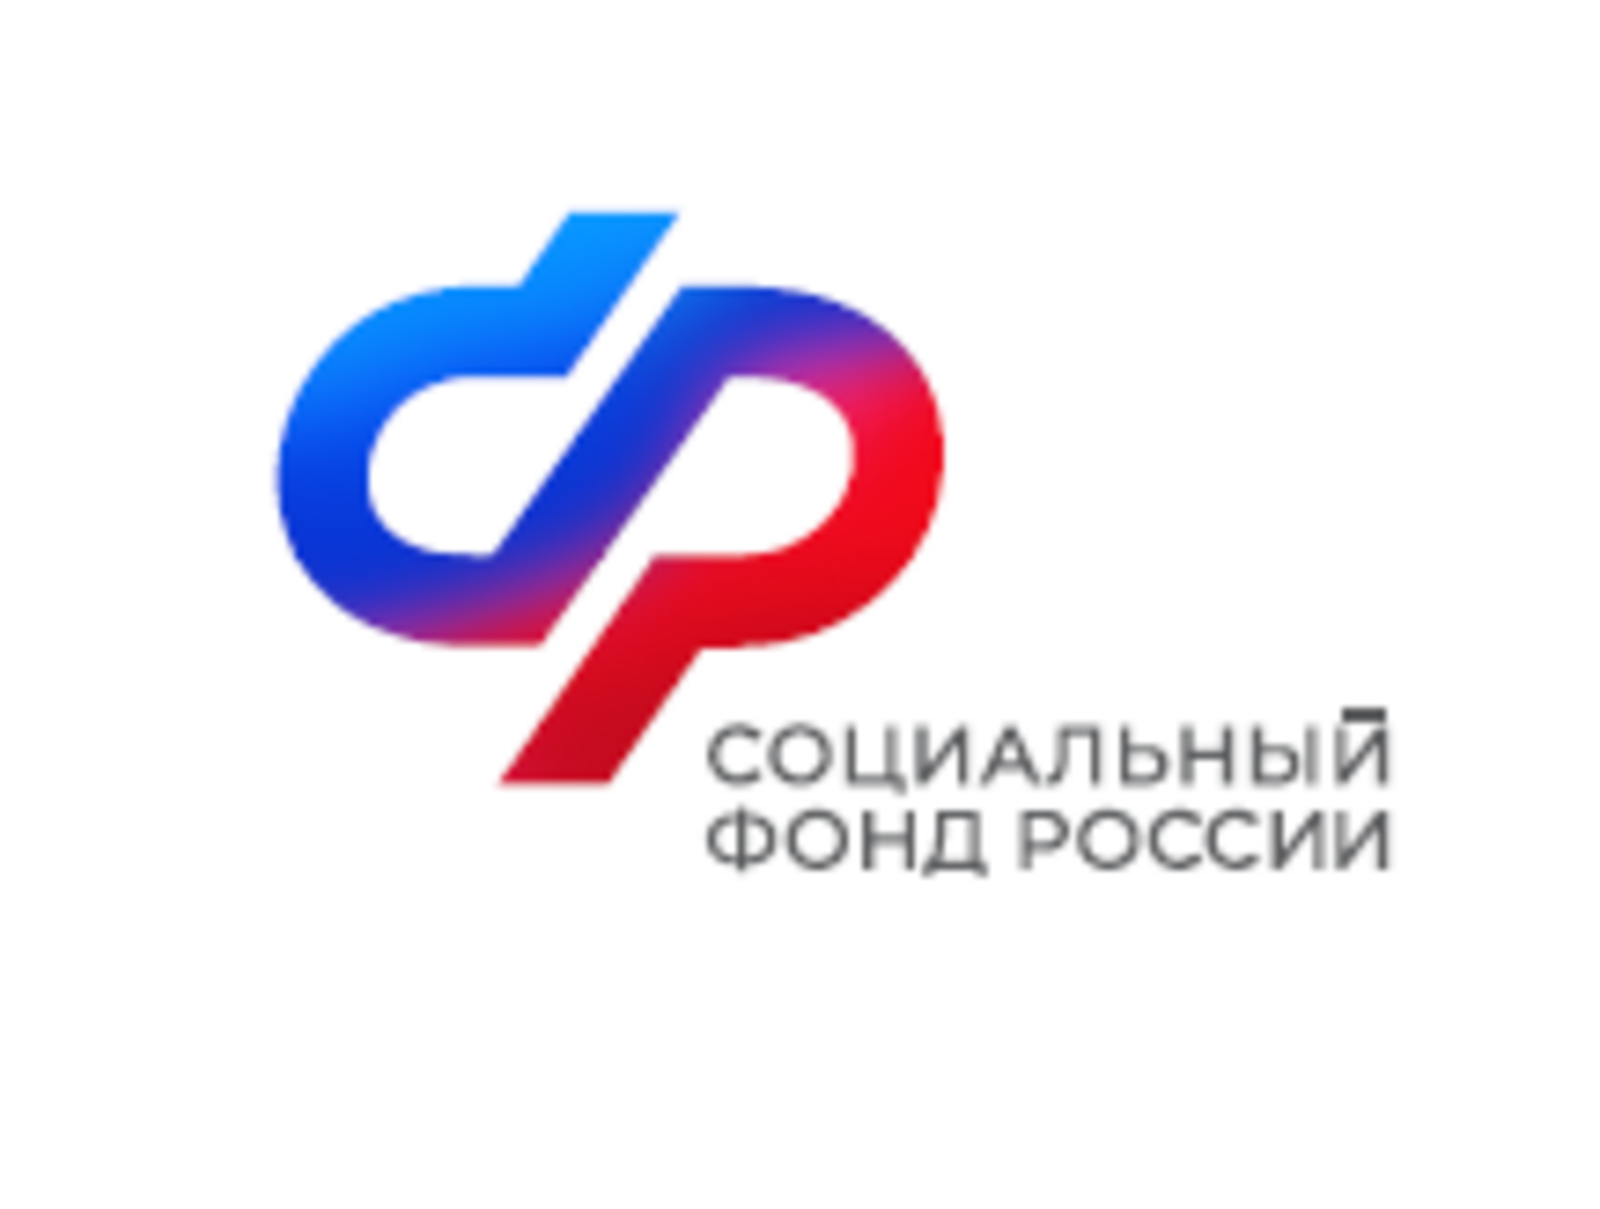 Башкортостан: с начала введения электронного сертификата граждане льготных категорий обеспечены техническими средствами реабилитации  на общую сумму 30 млн. рублей